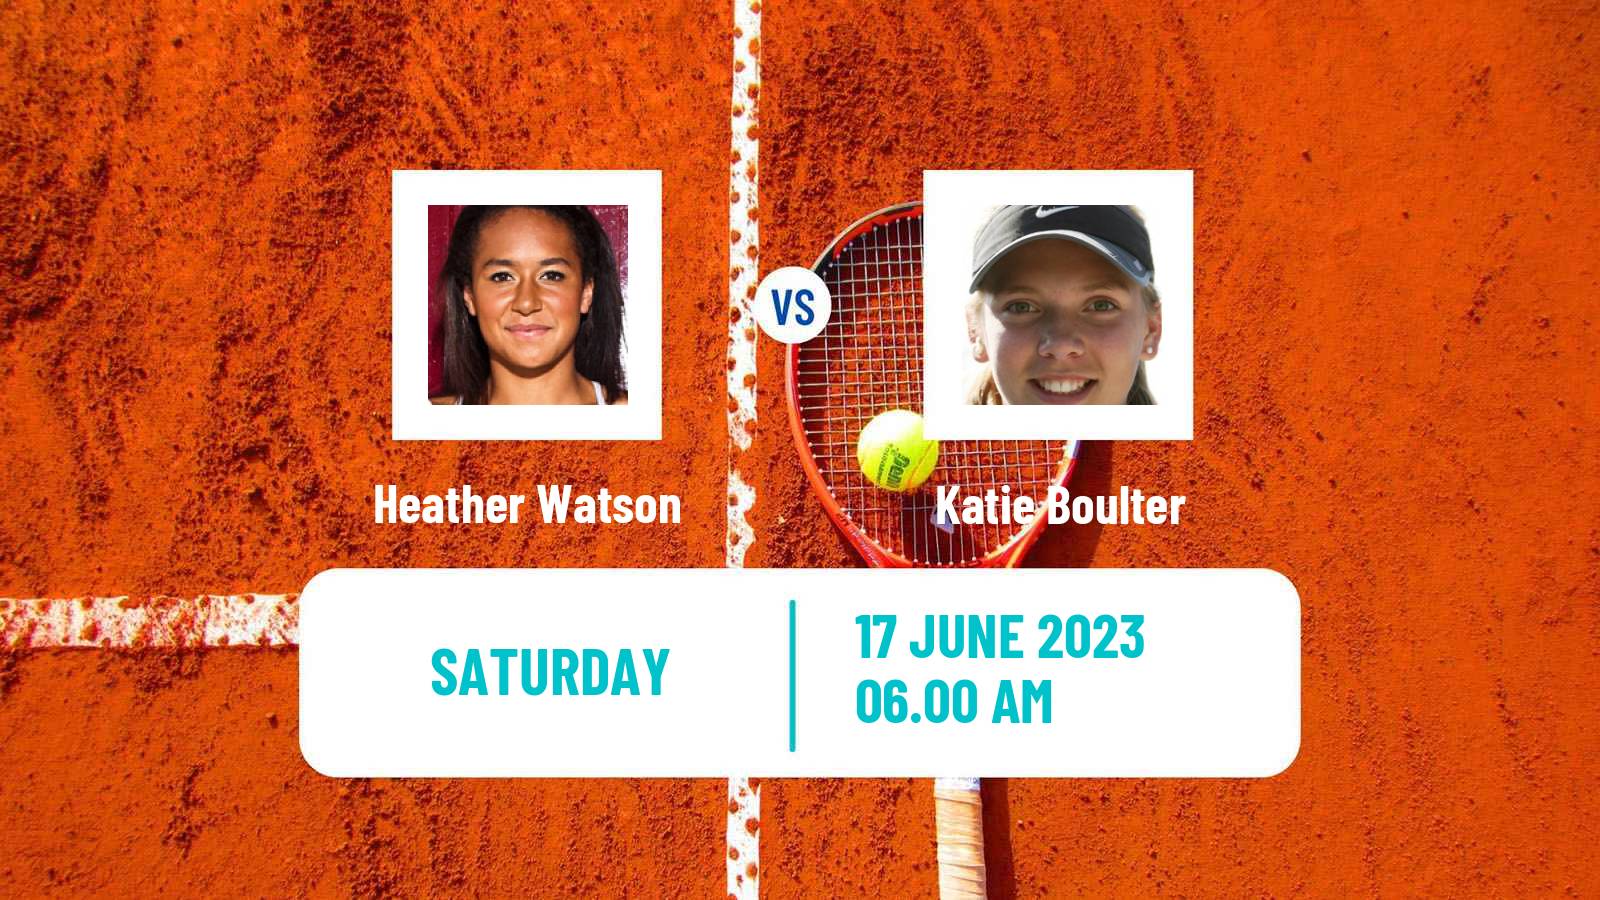 Tennis WTA Nottingham Heather Watson - Katie Boulter